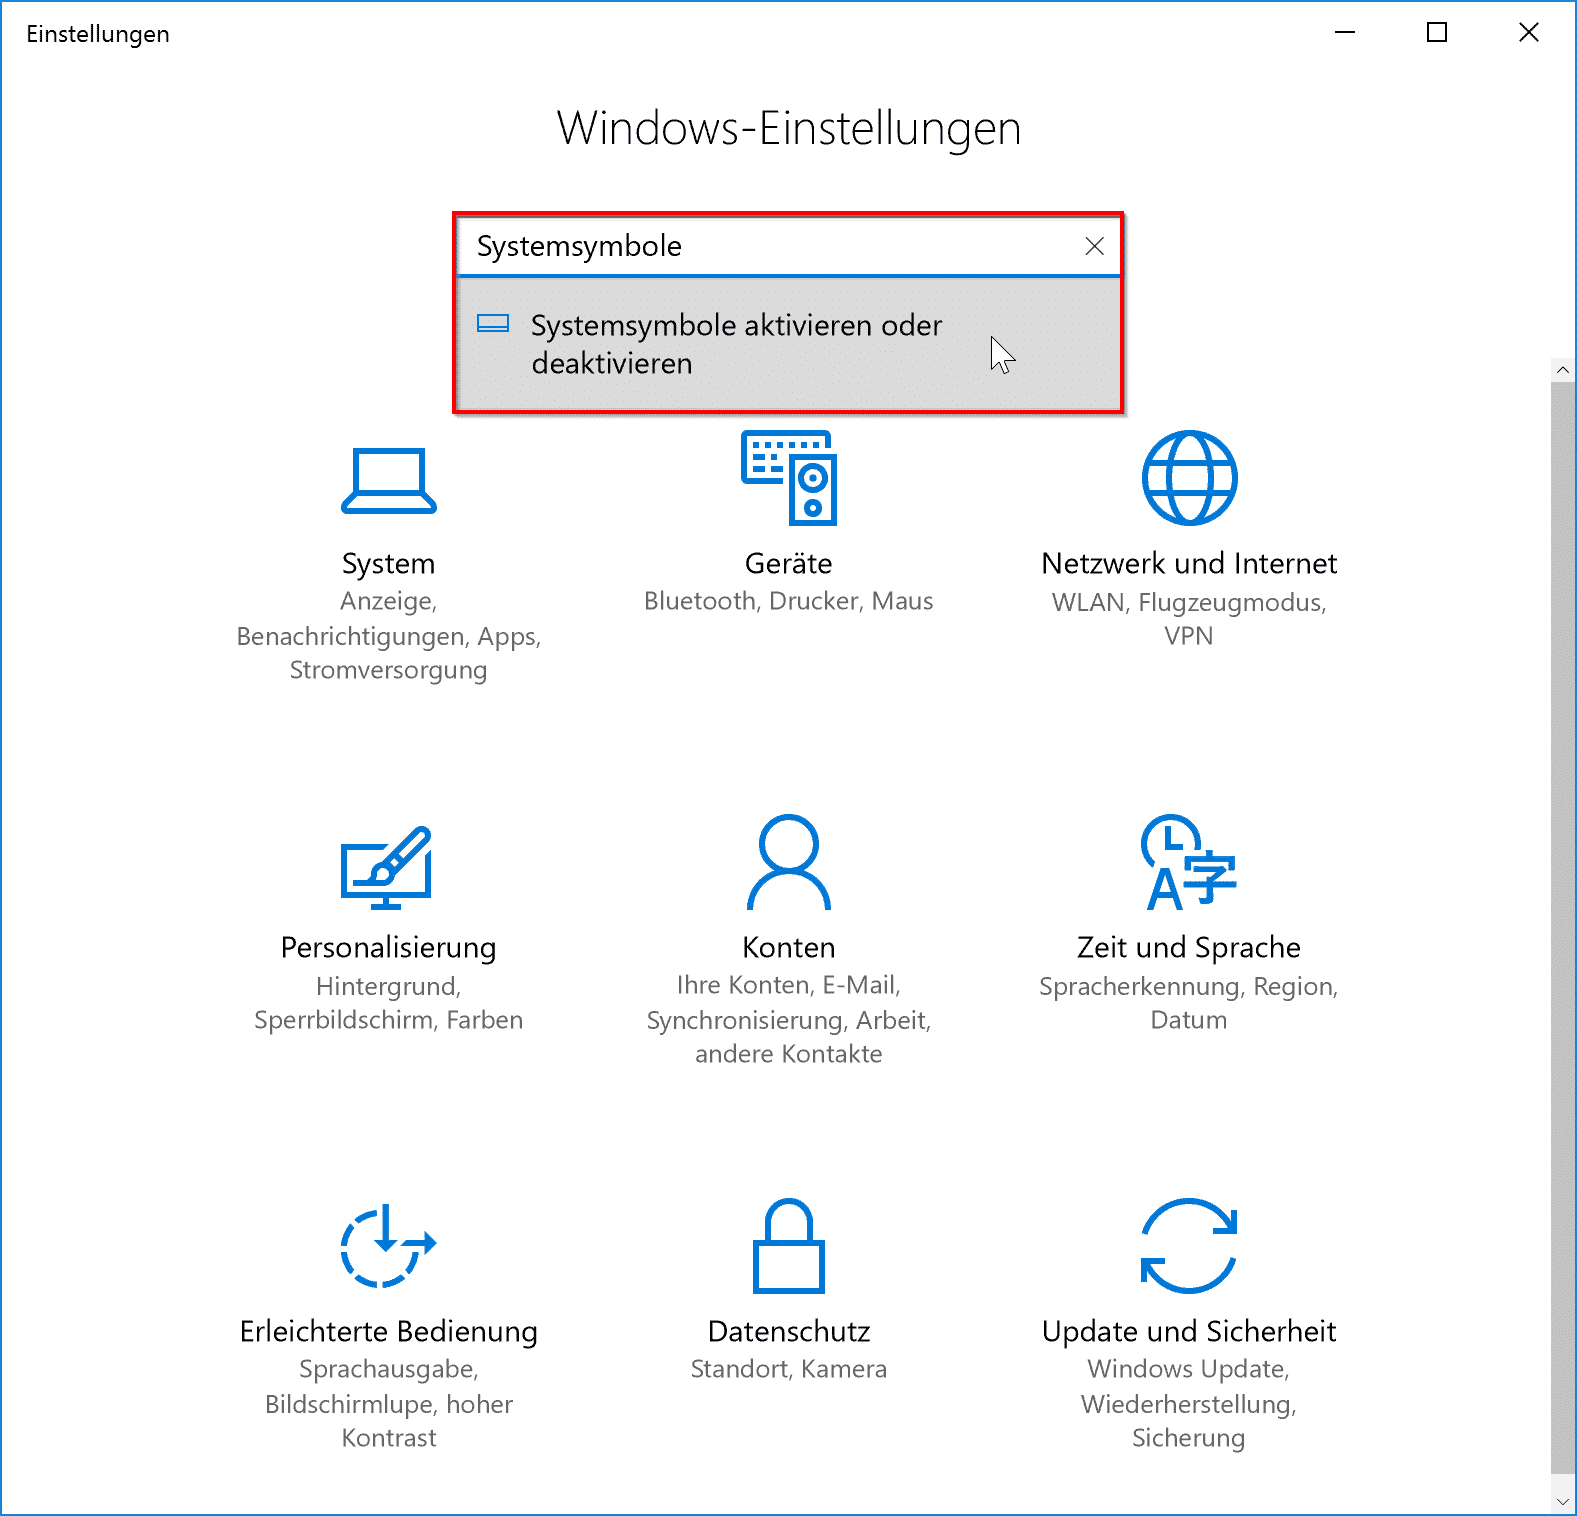 Windows 10 Systemsymbole aktivieren oder deaktivieren